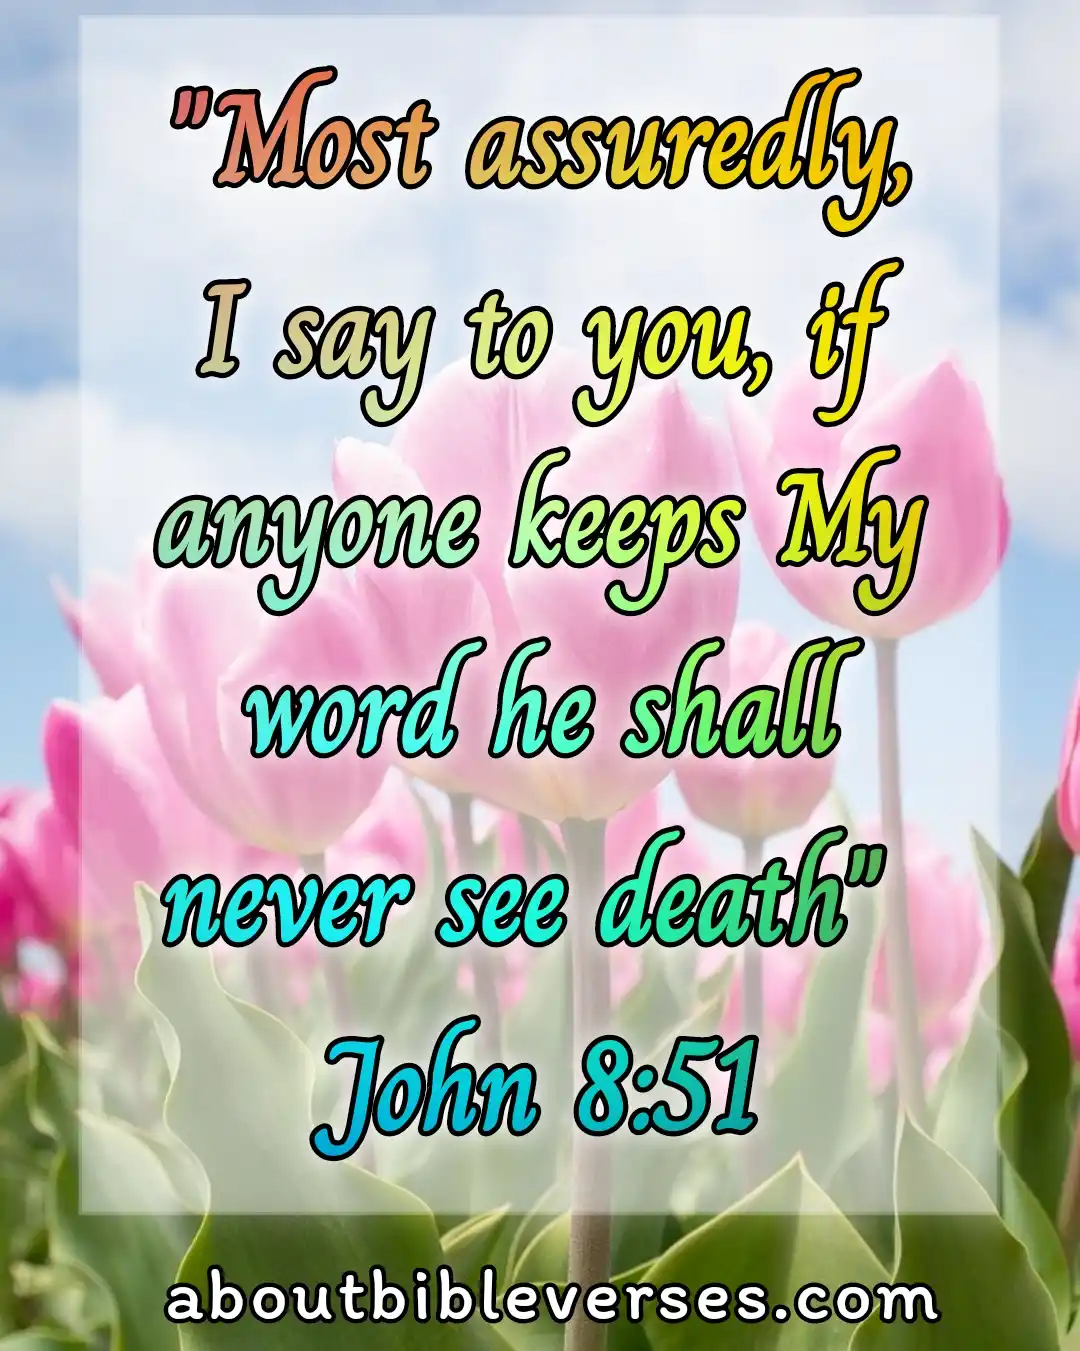 Today bible verse (John 8:51)